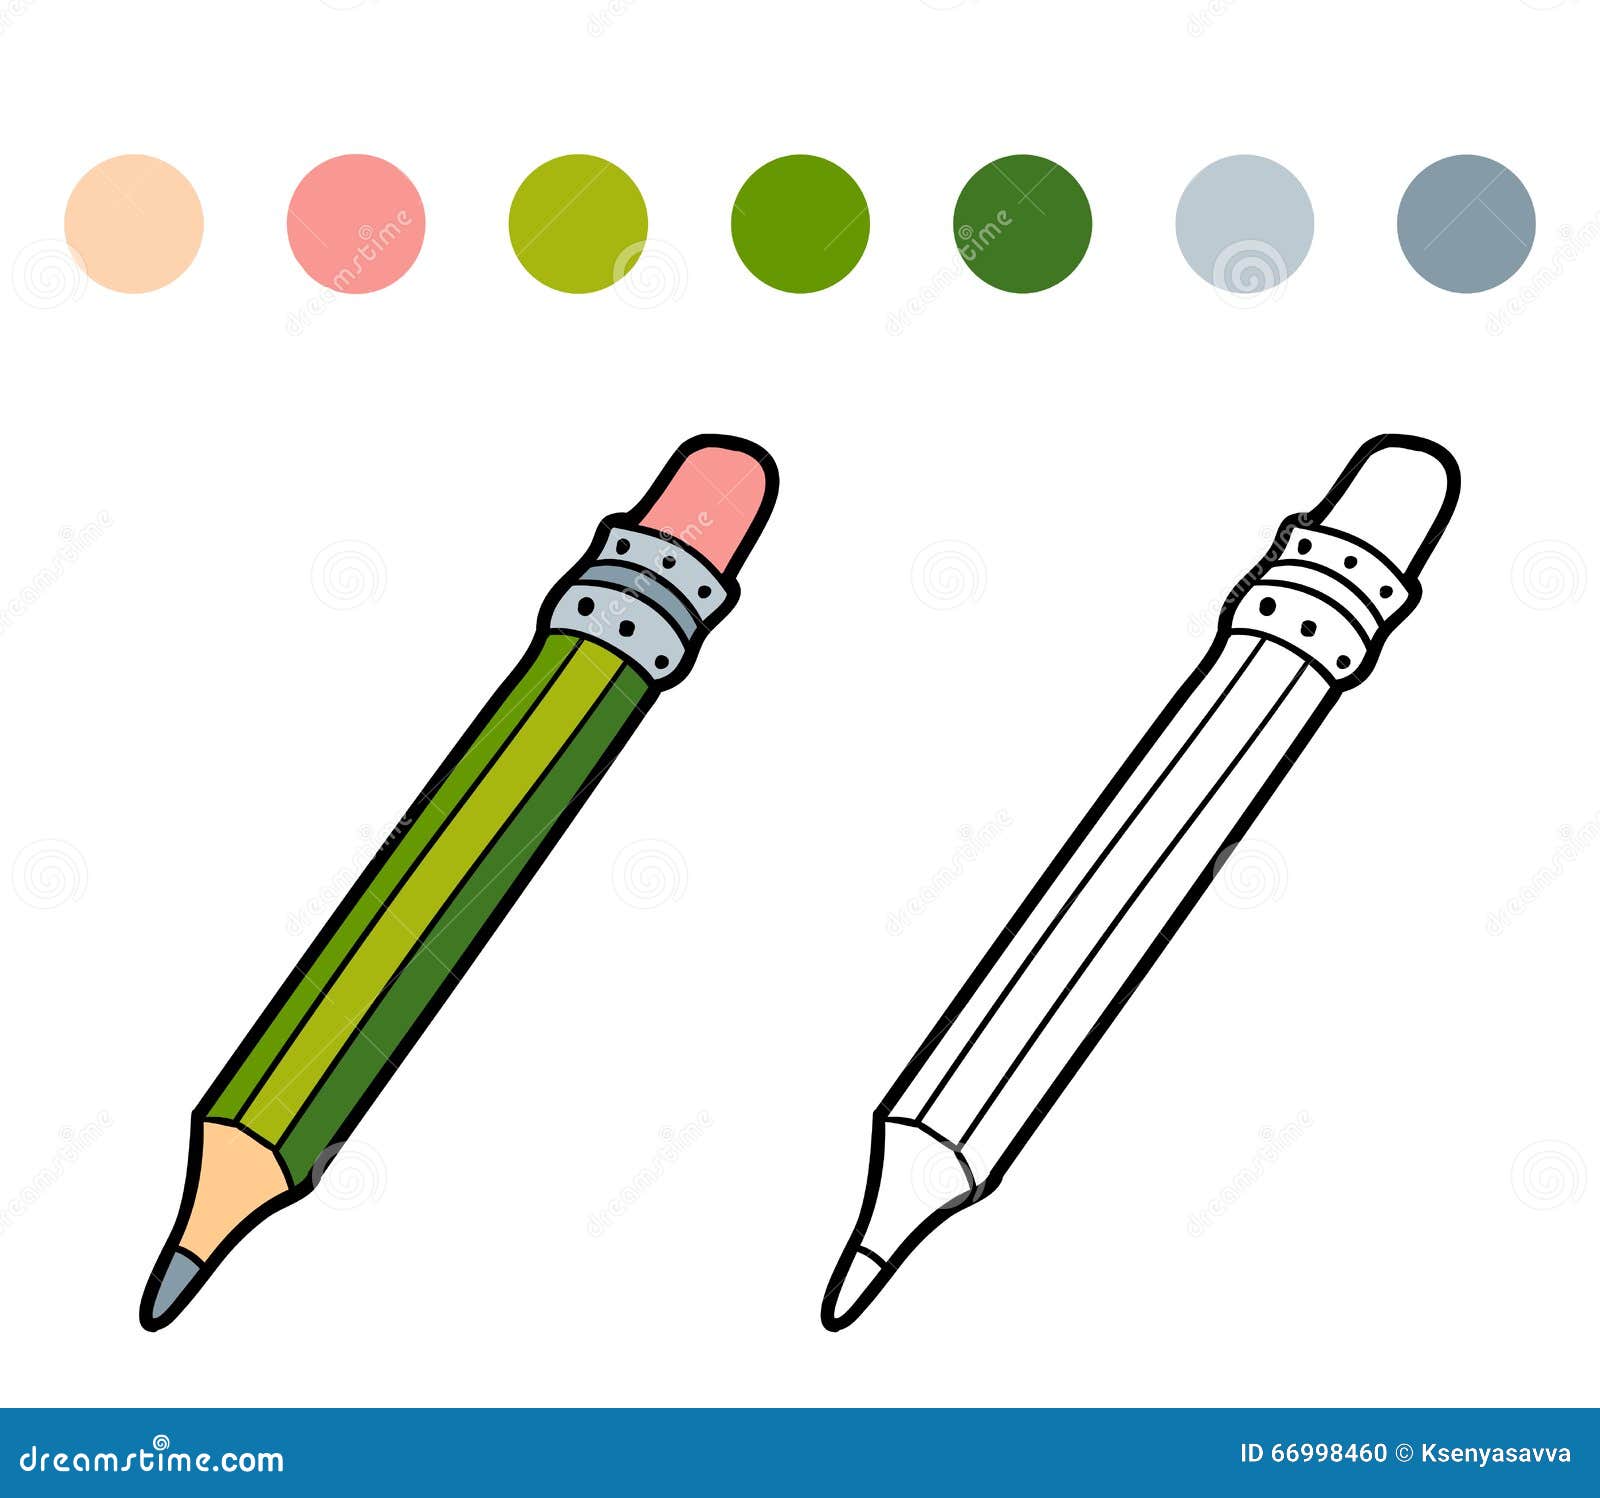 Crayons pour livres de coloriage